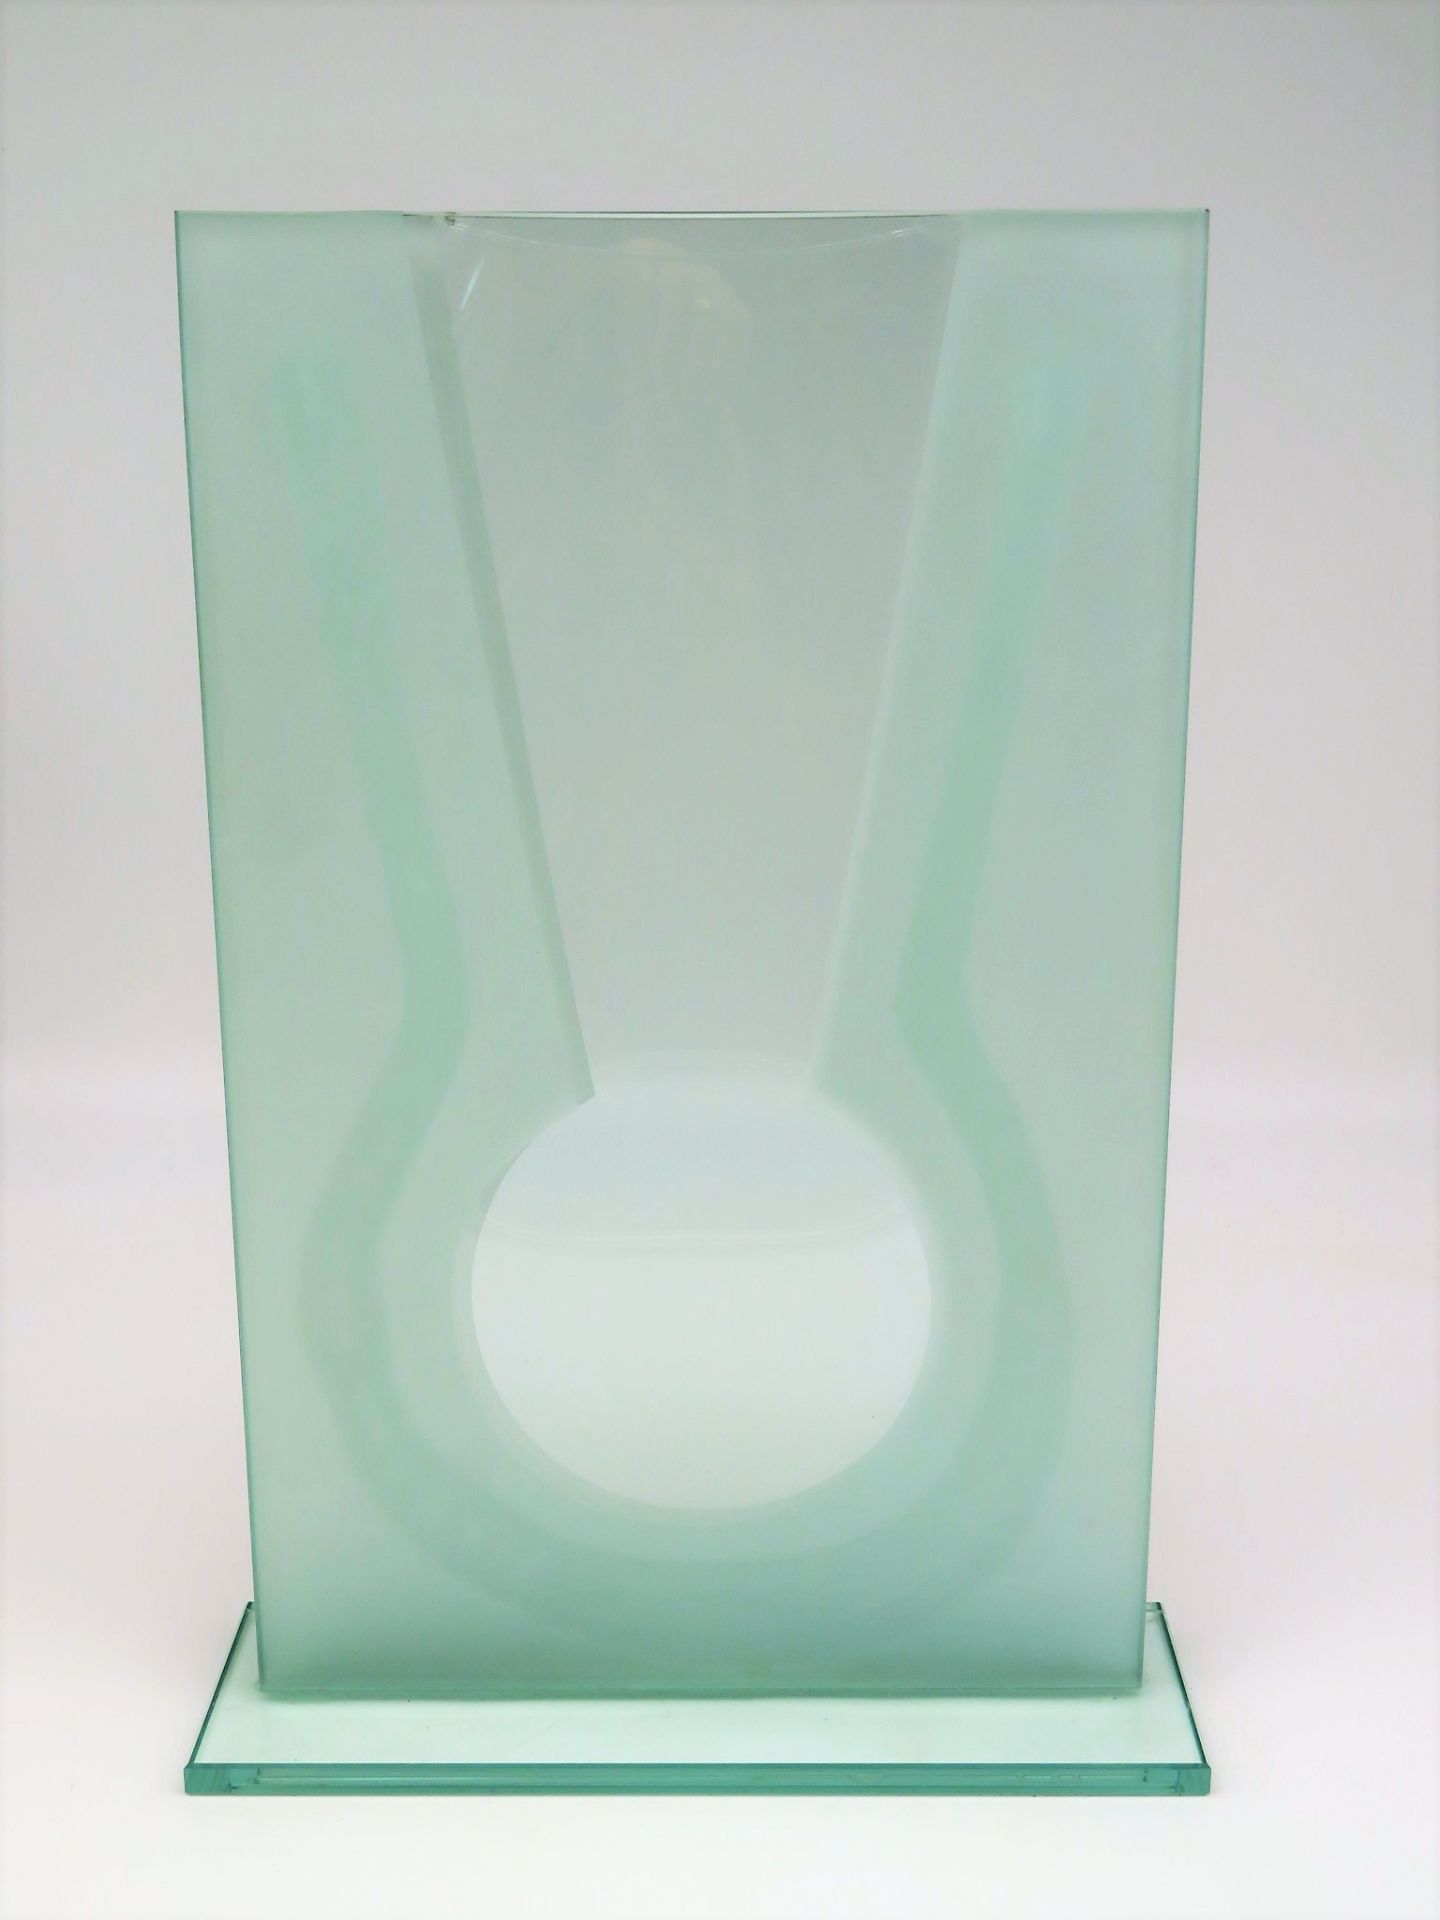 Seltene Designer Vase, farbloses Glas, teils mattiert, 34 x 23 x 7 cm.